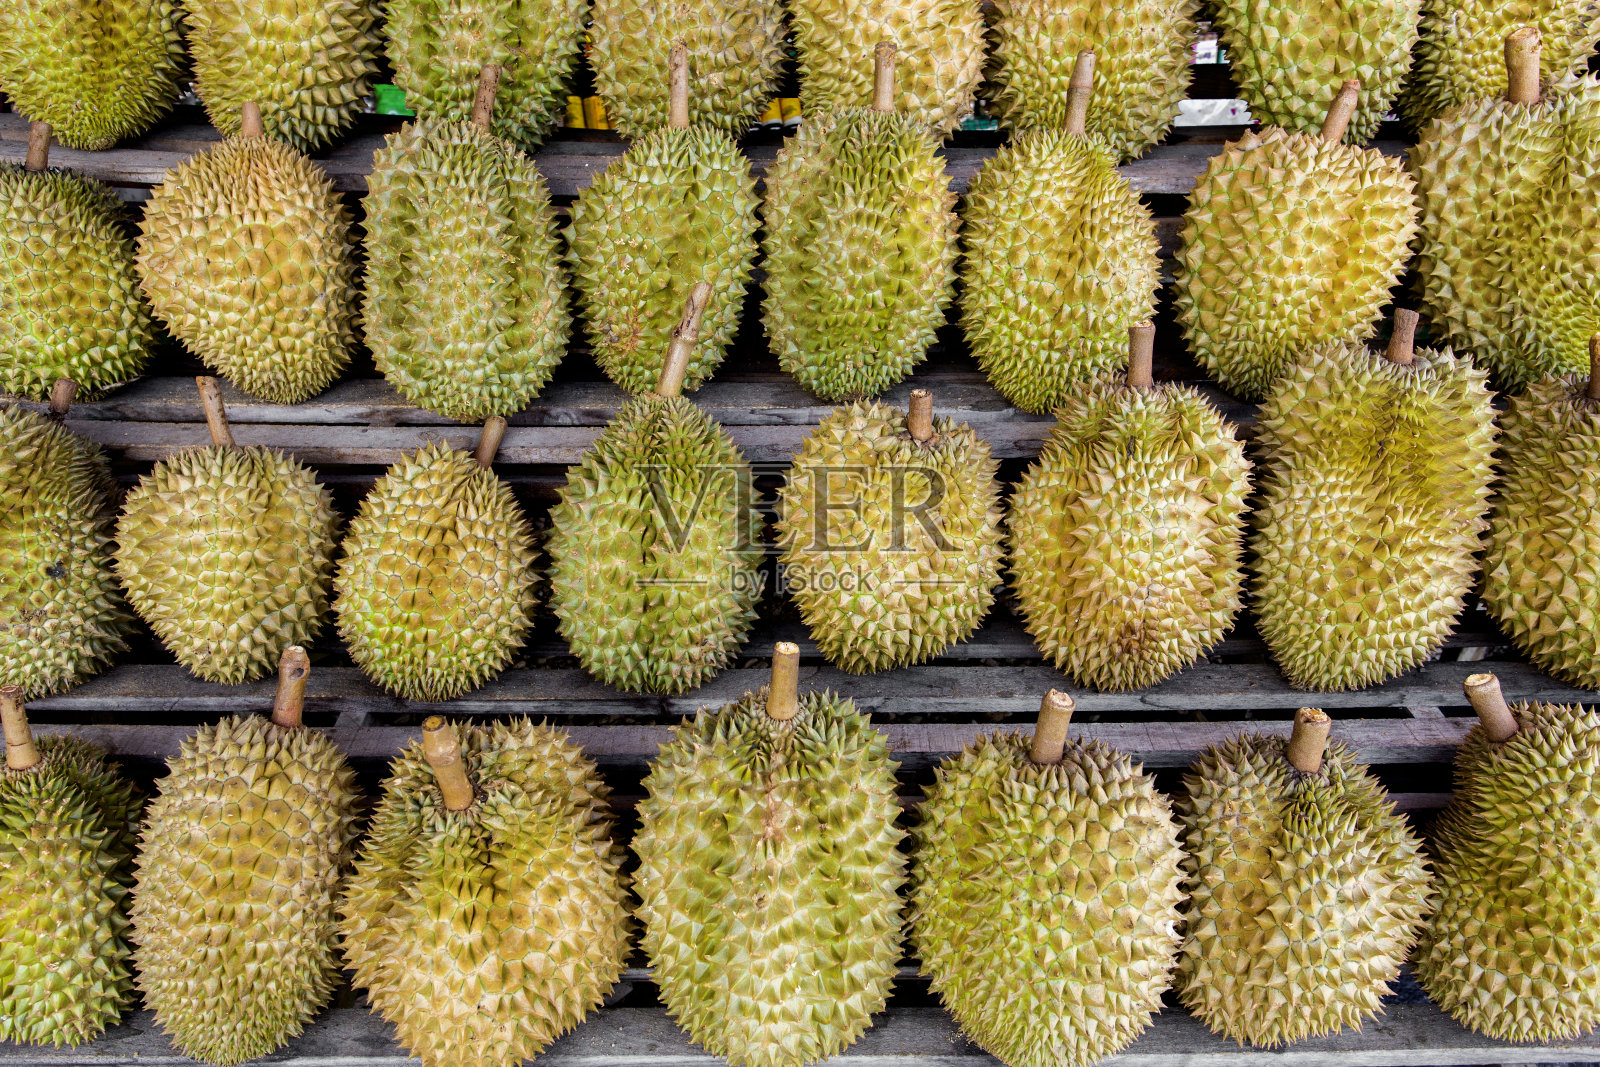 榴莲是泰国水果之王，货架上展示的许多榴莲图片可供顾客选择，可以作为水果、泰国水果、水果之王内容的背景。照片摄影图片